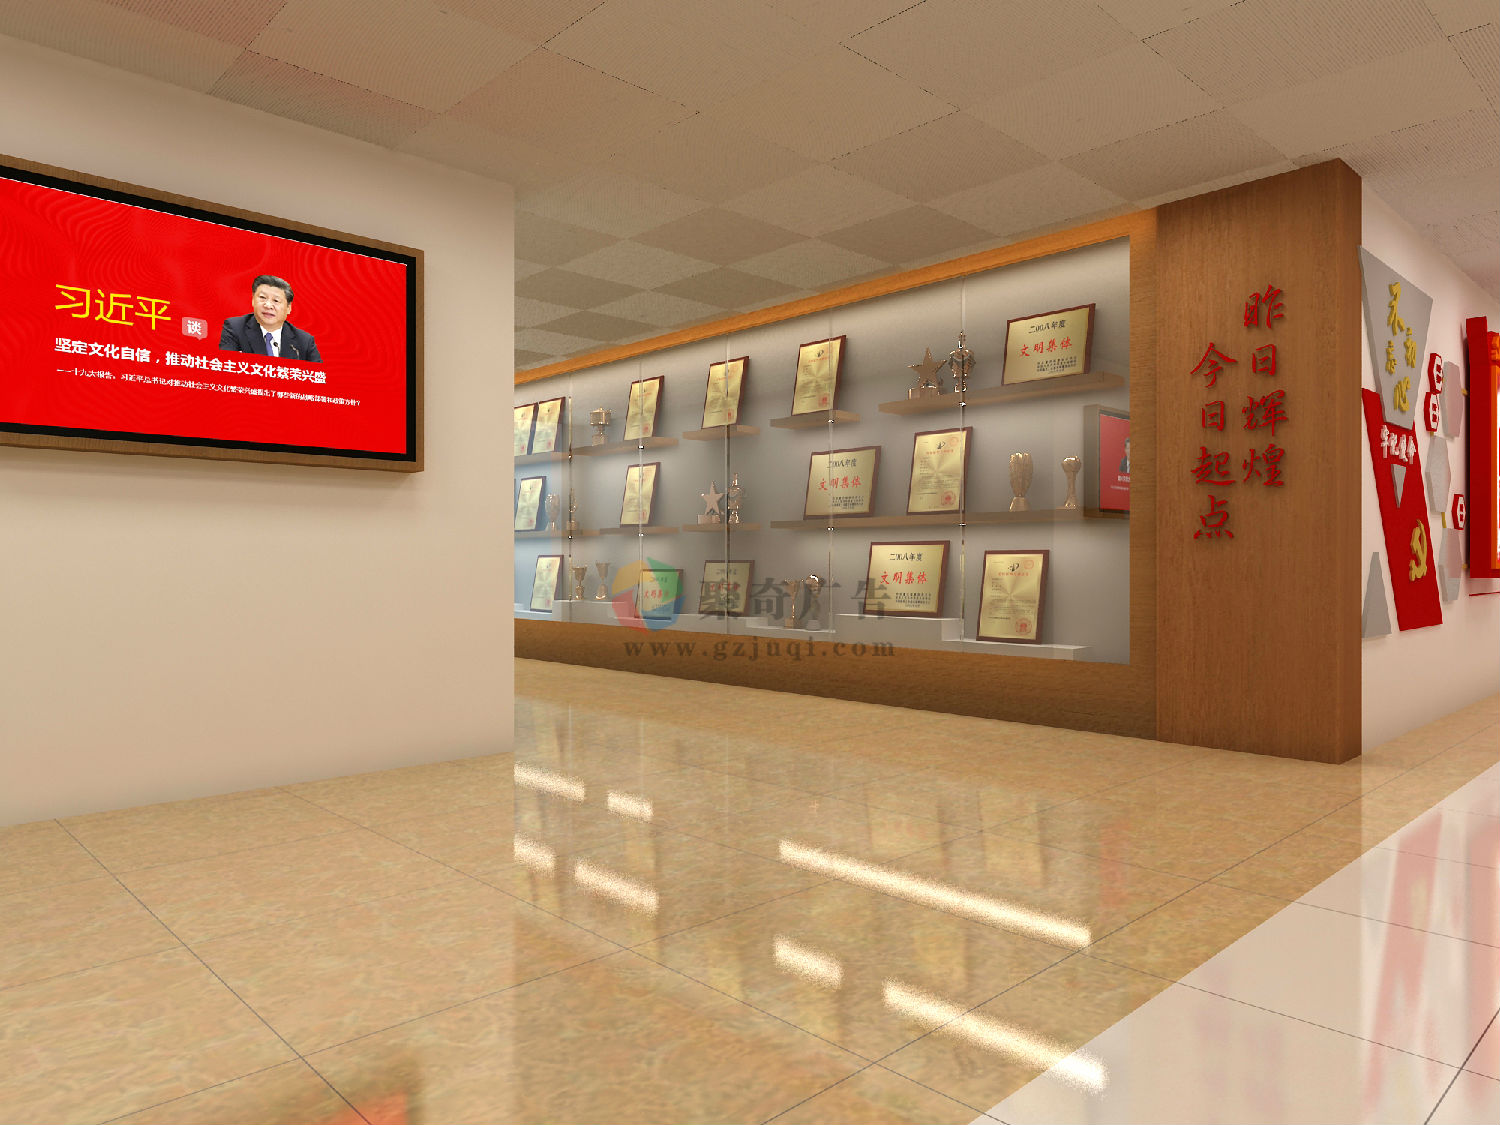 图片2.jpg 广州大学新闻与传播学院荣誉墙设计